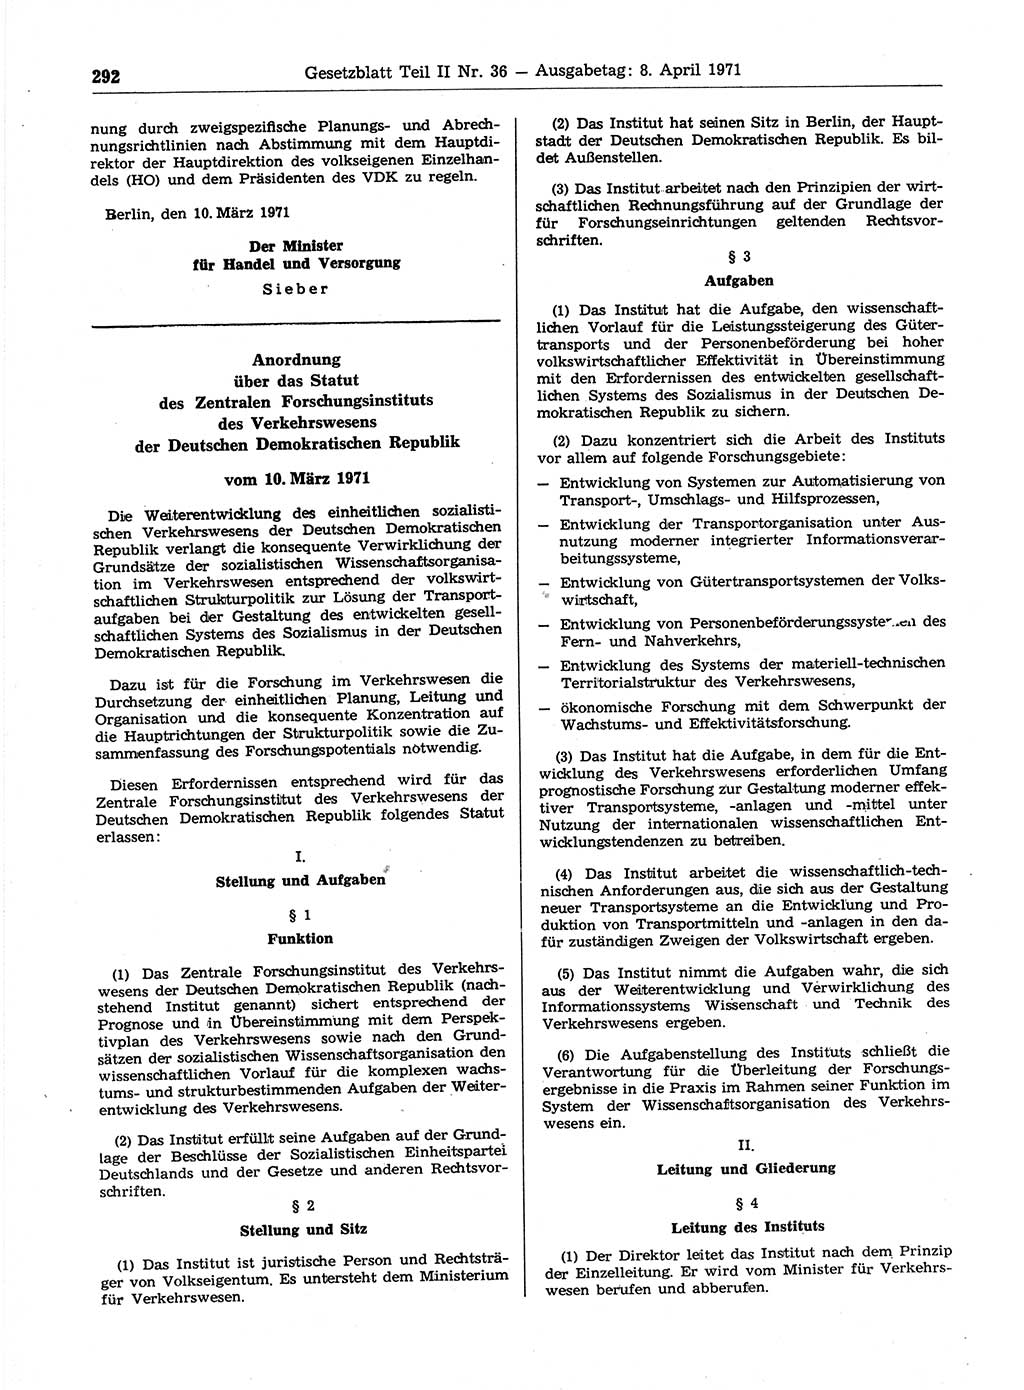 Gesetzblatt (GBl.) der Deutschen Demokratischen Republik (DDR) Teil ⅠⅠ 1971, Seite 292 (GBl. DDR ⅠⅠ 1971, S. 292)